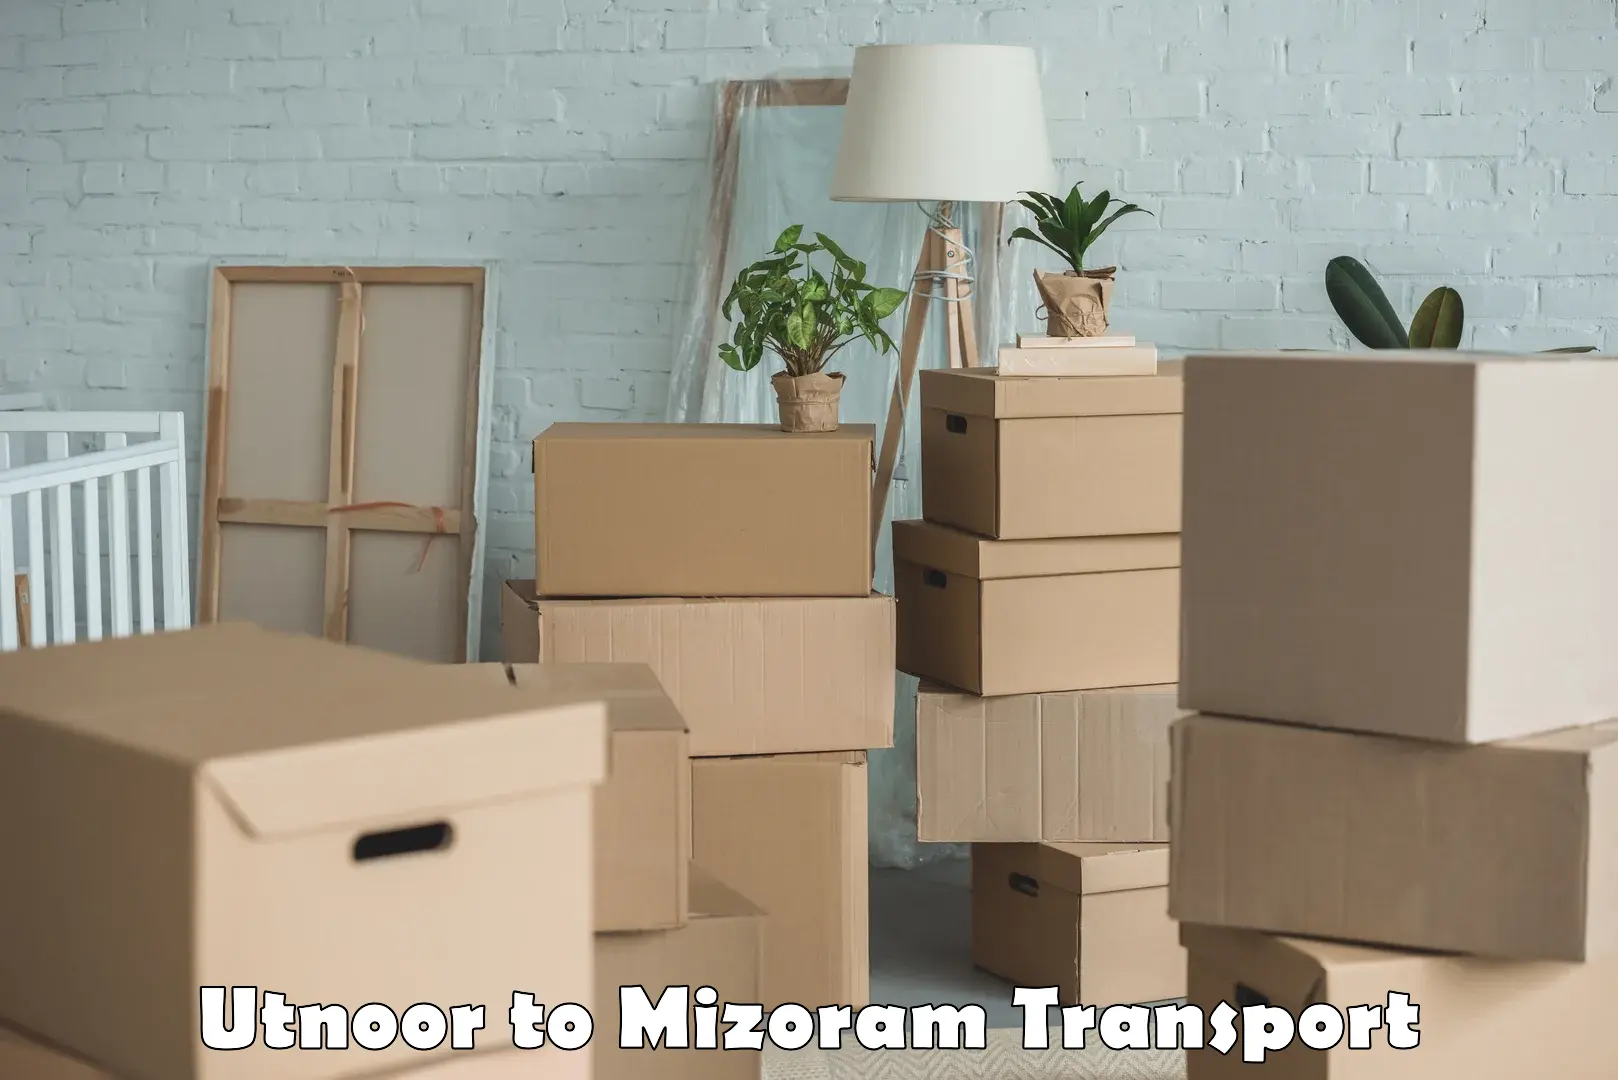 Delivery service Utnoor to Mizoram